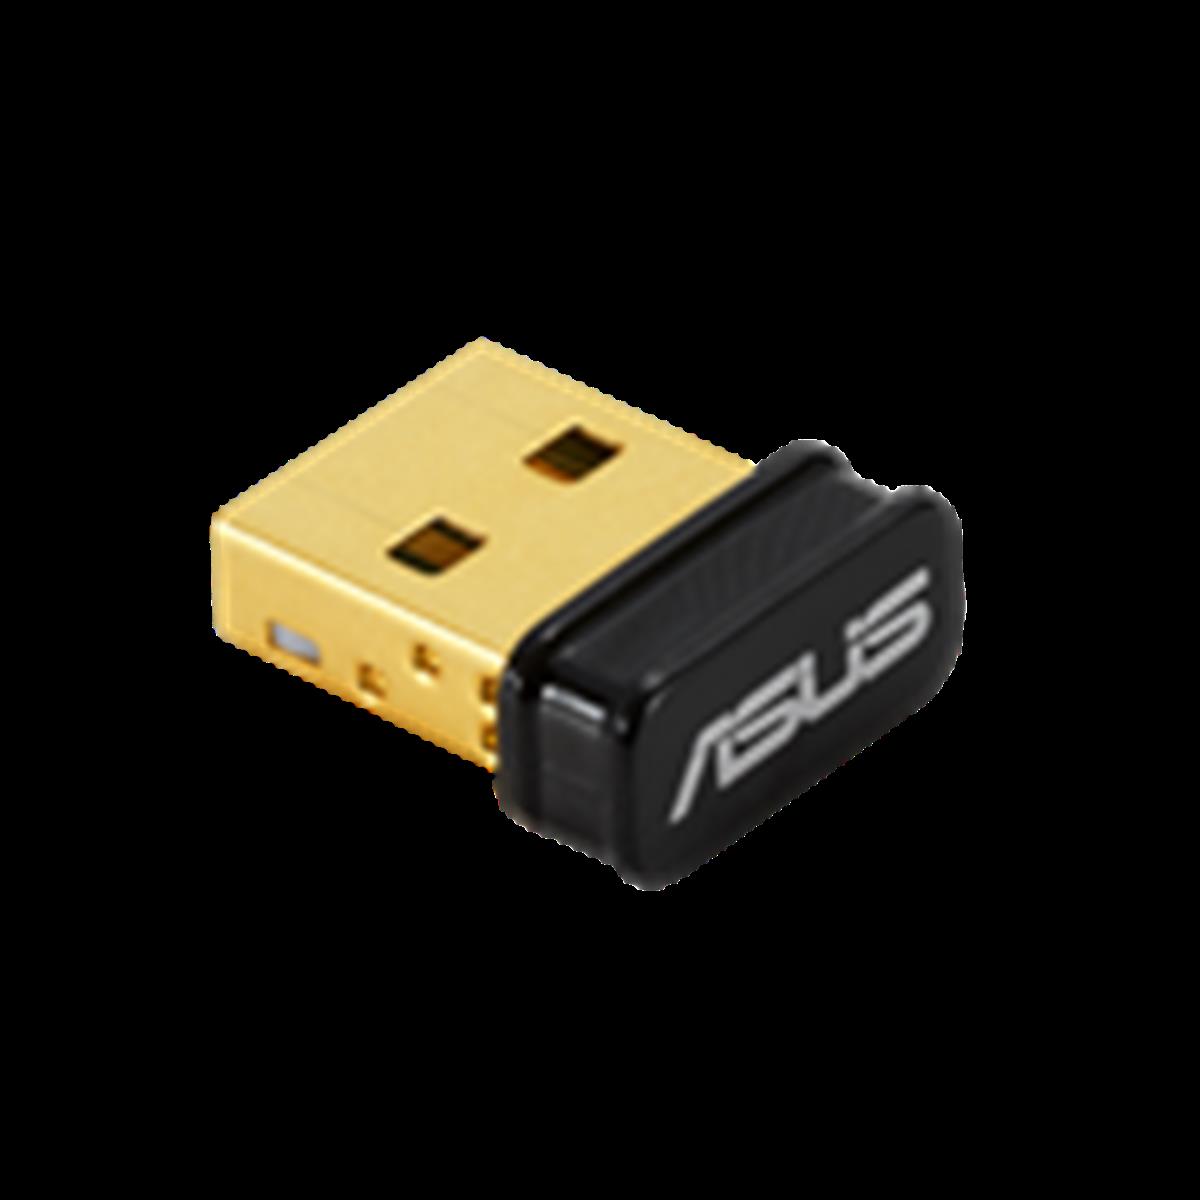 ASUS USB-BT500 BLUETOOTH 5.0 USB ADAPTÖRÜ NNWASU0009 | www.hizlistok.com.tr  de sizin için en uygun fiyatlarda